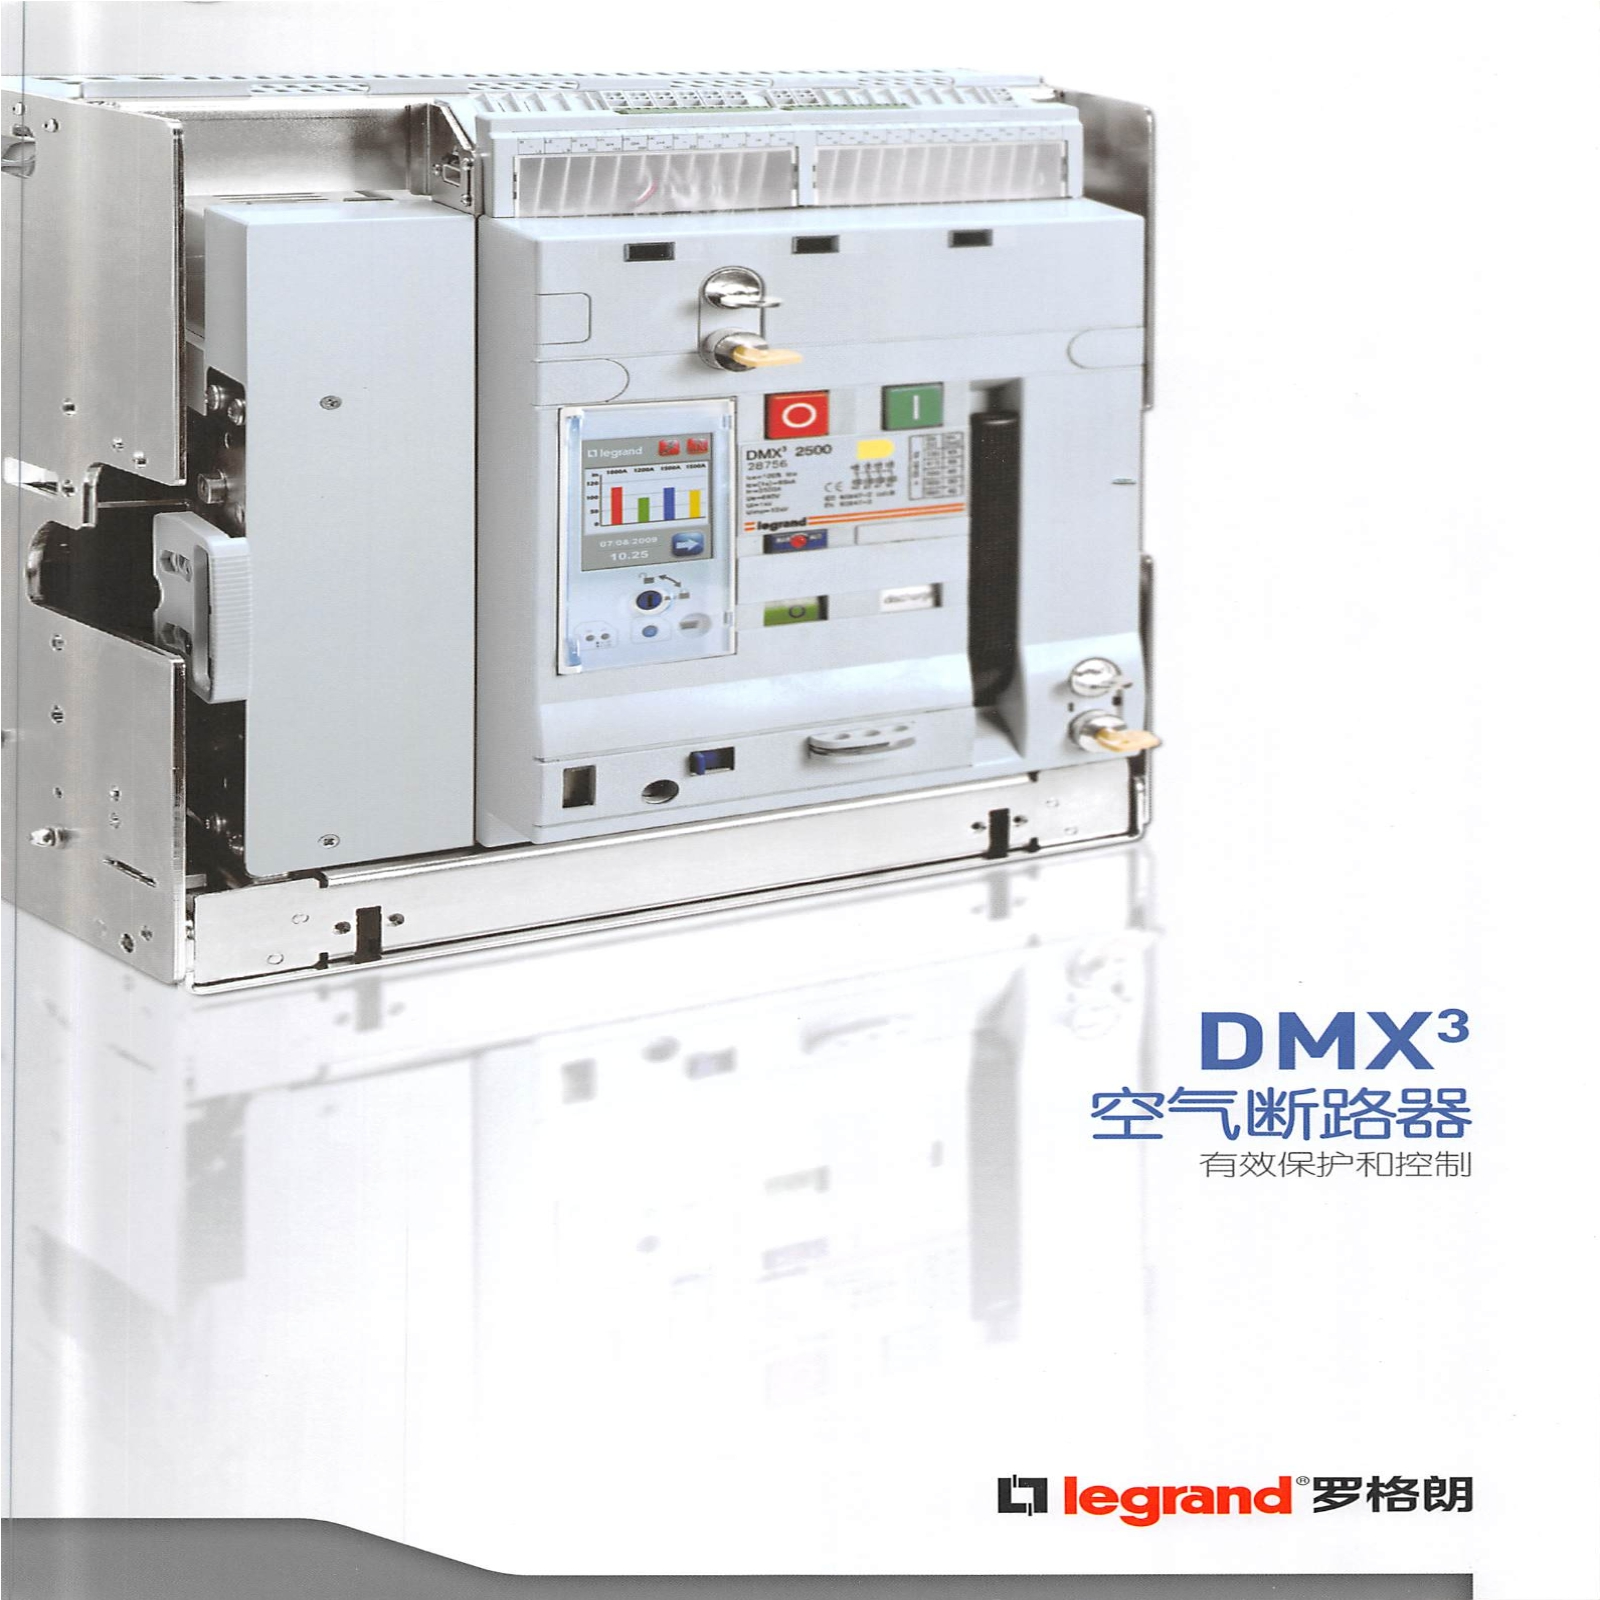 DMX3空气断路器